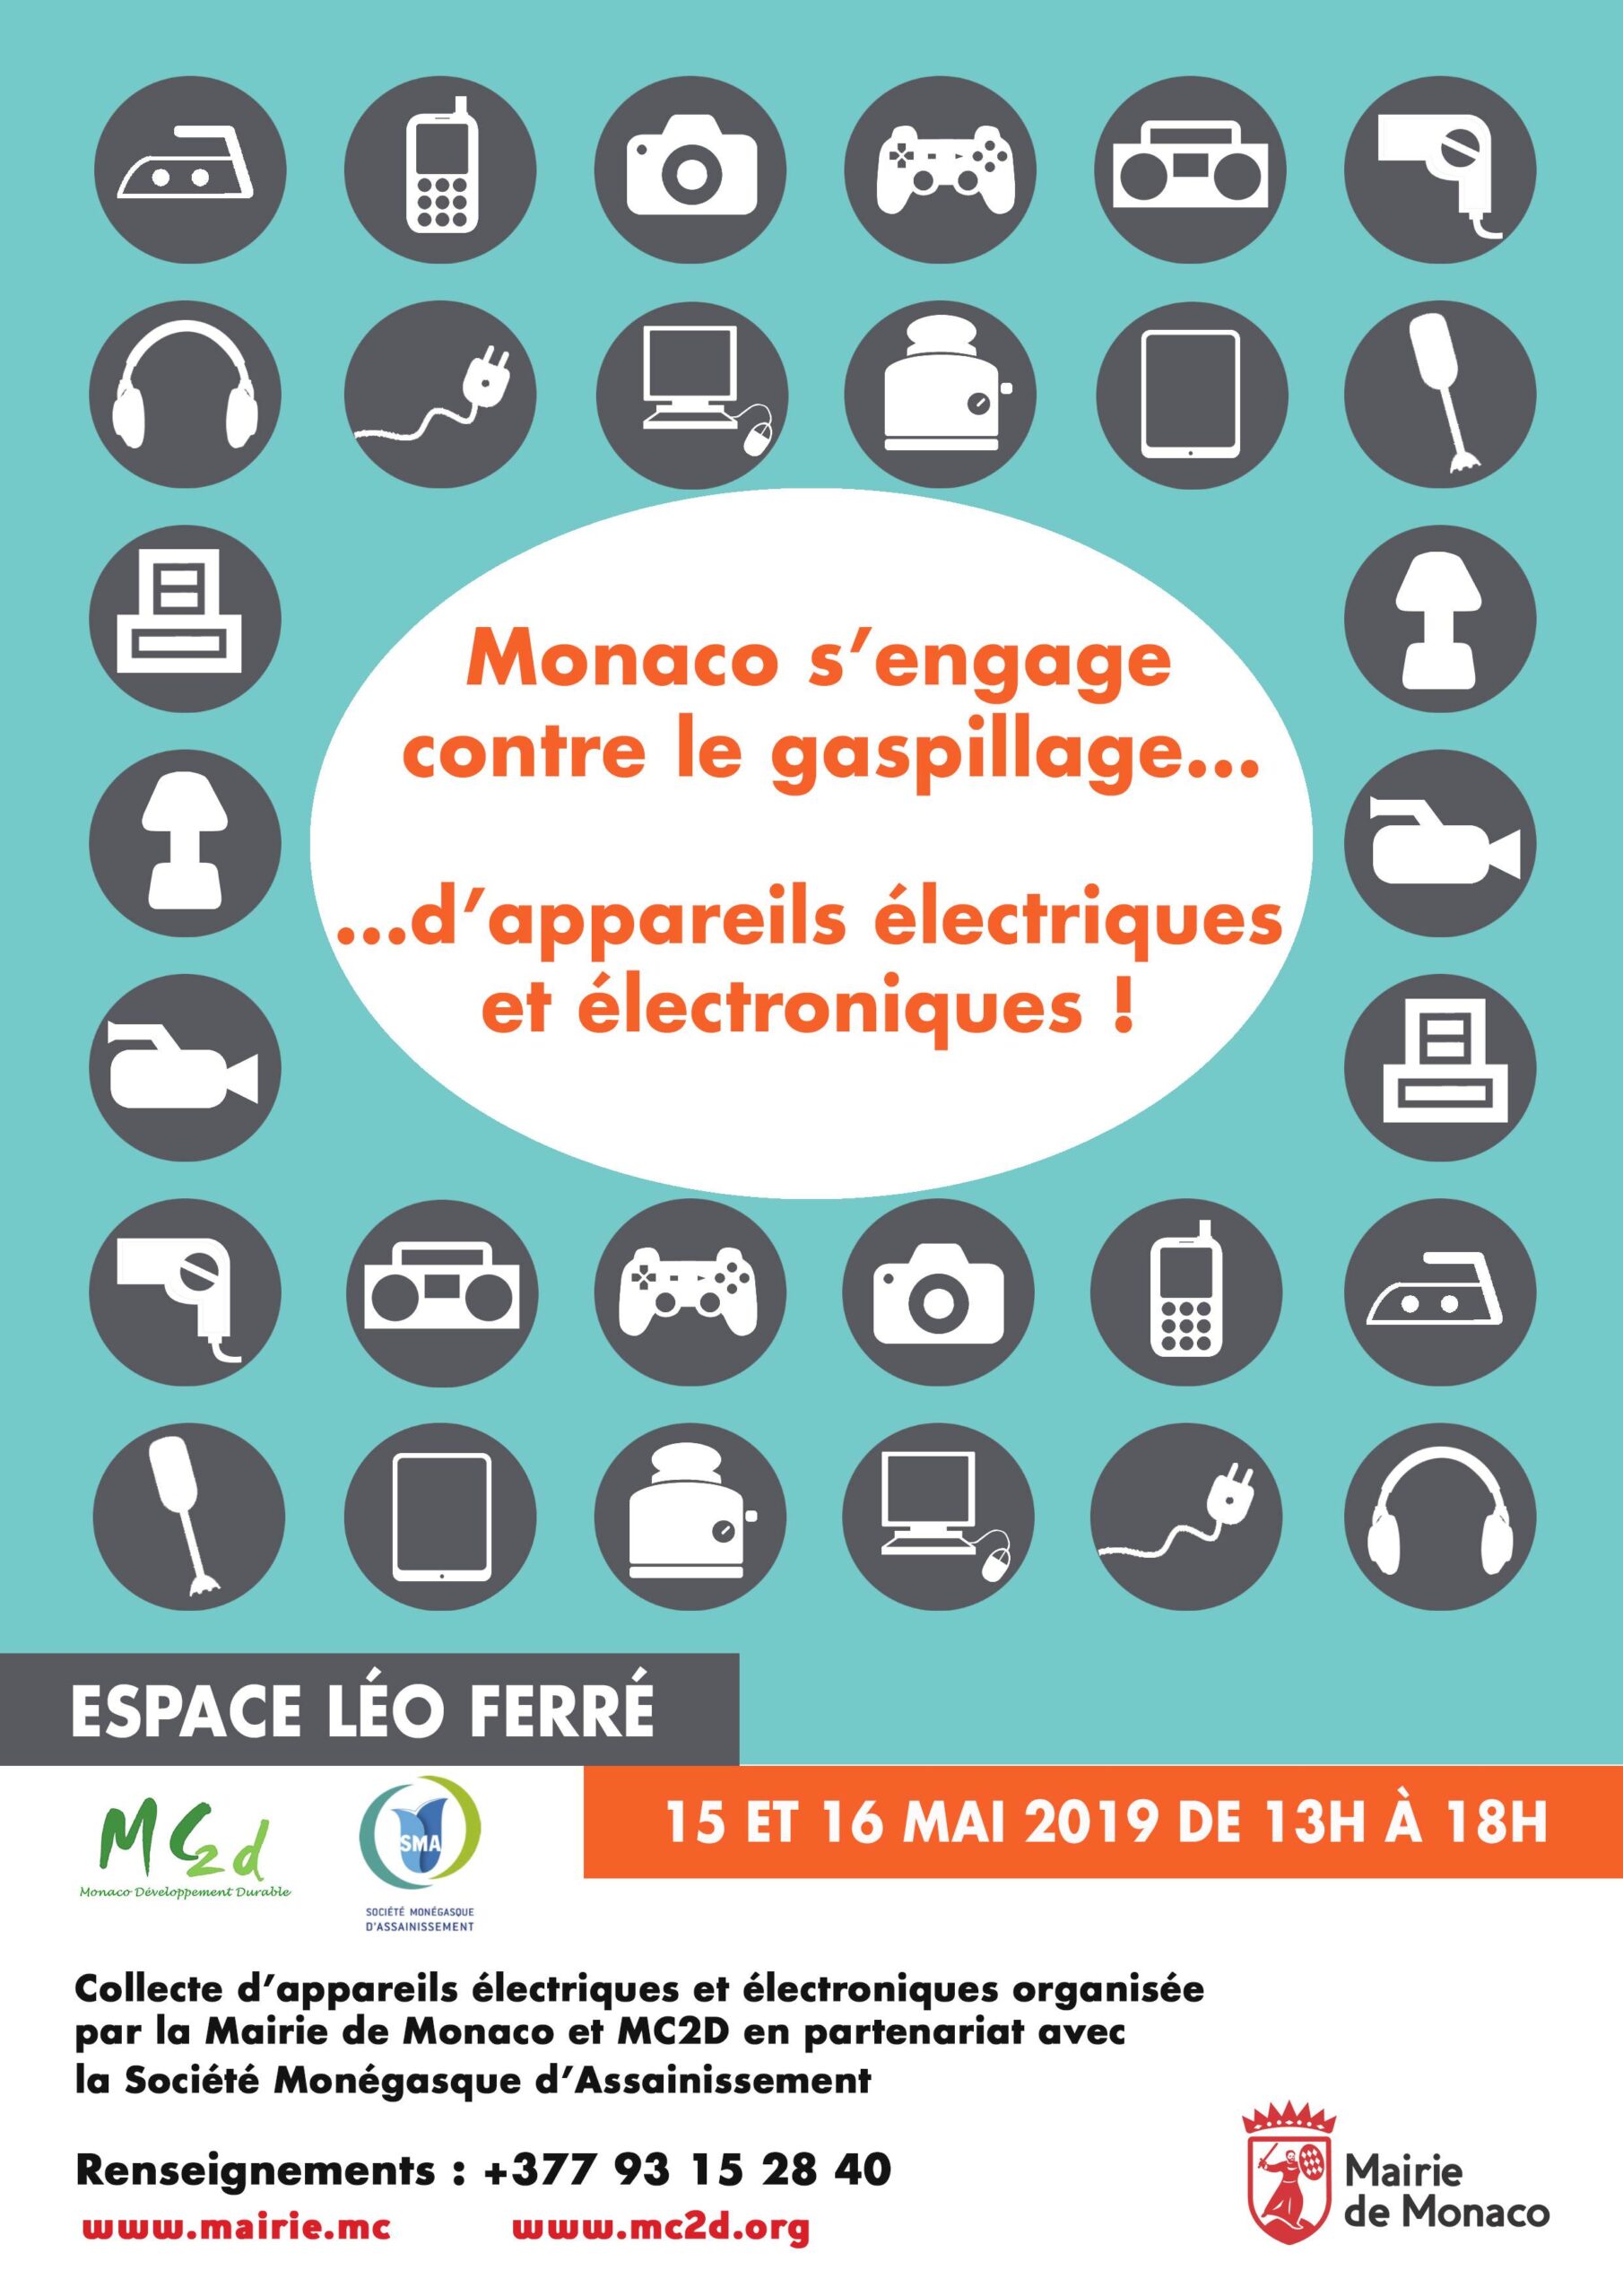 Monaco sengage contre le gaspillage dappareils électriques et électroniques Mai 2019